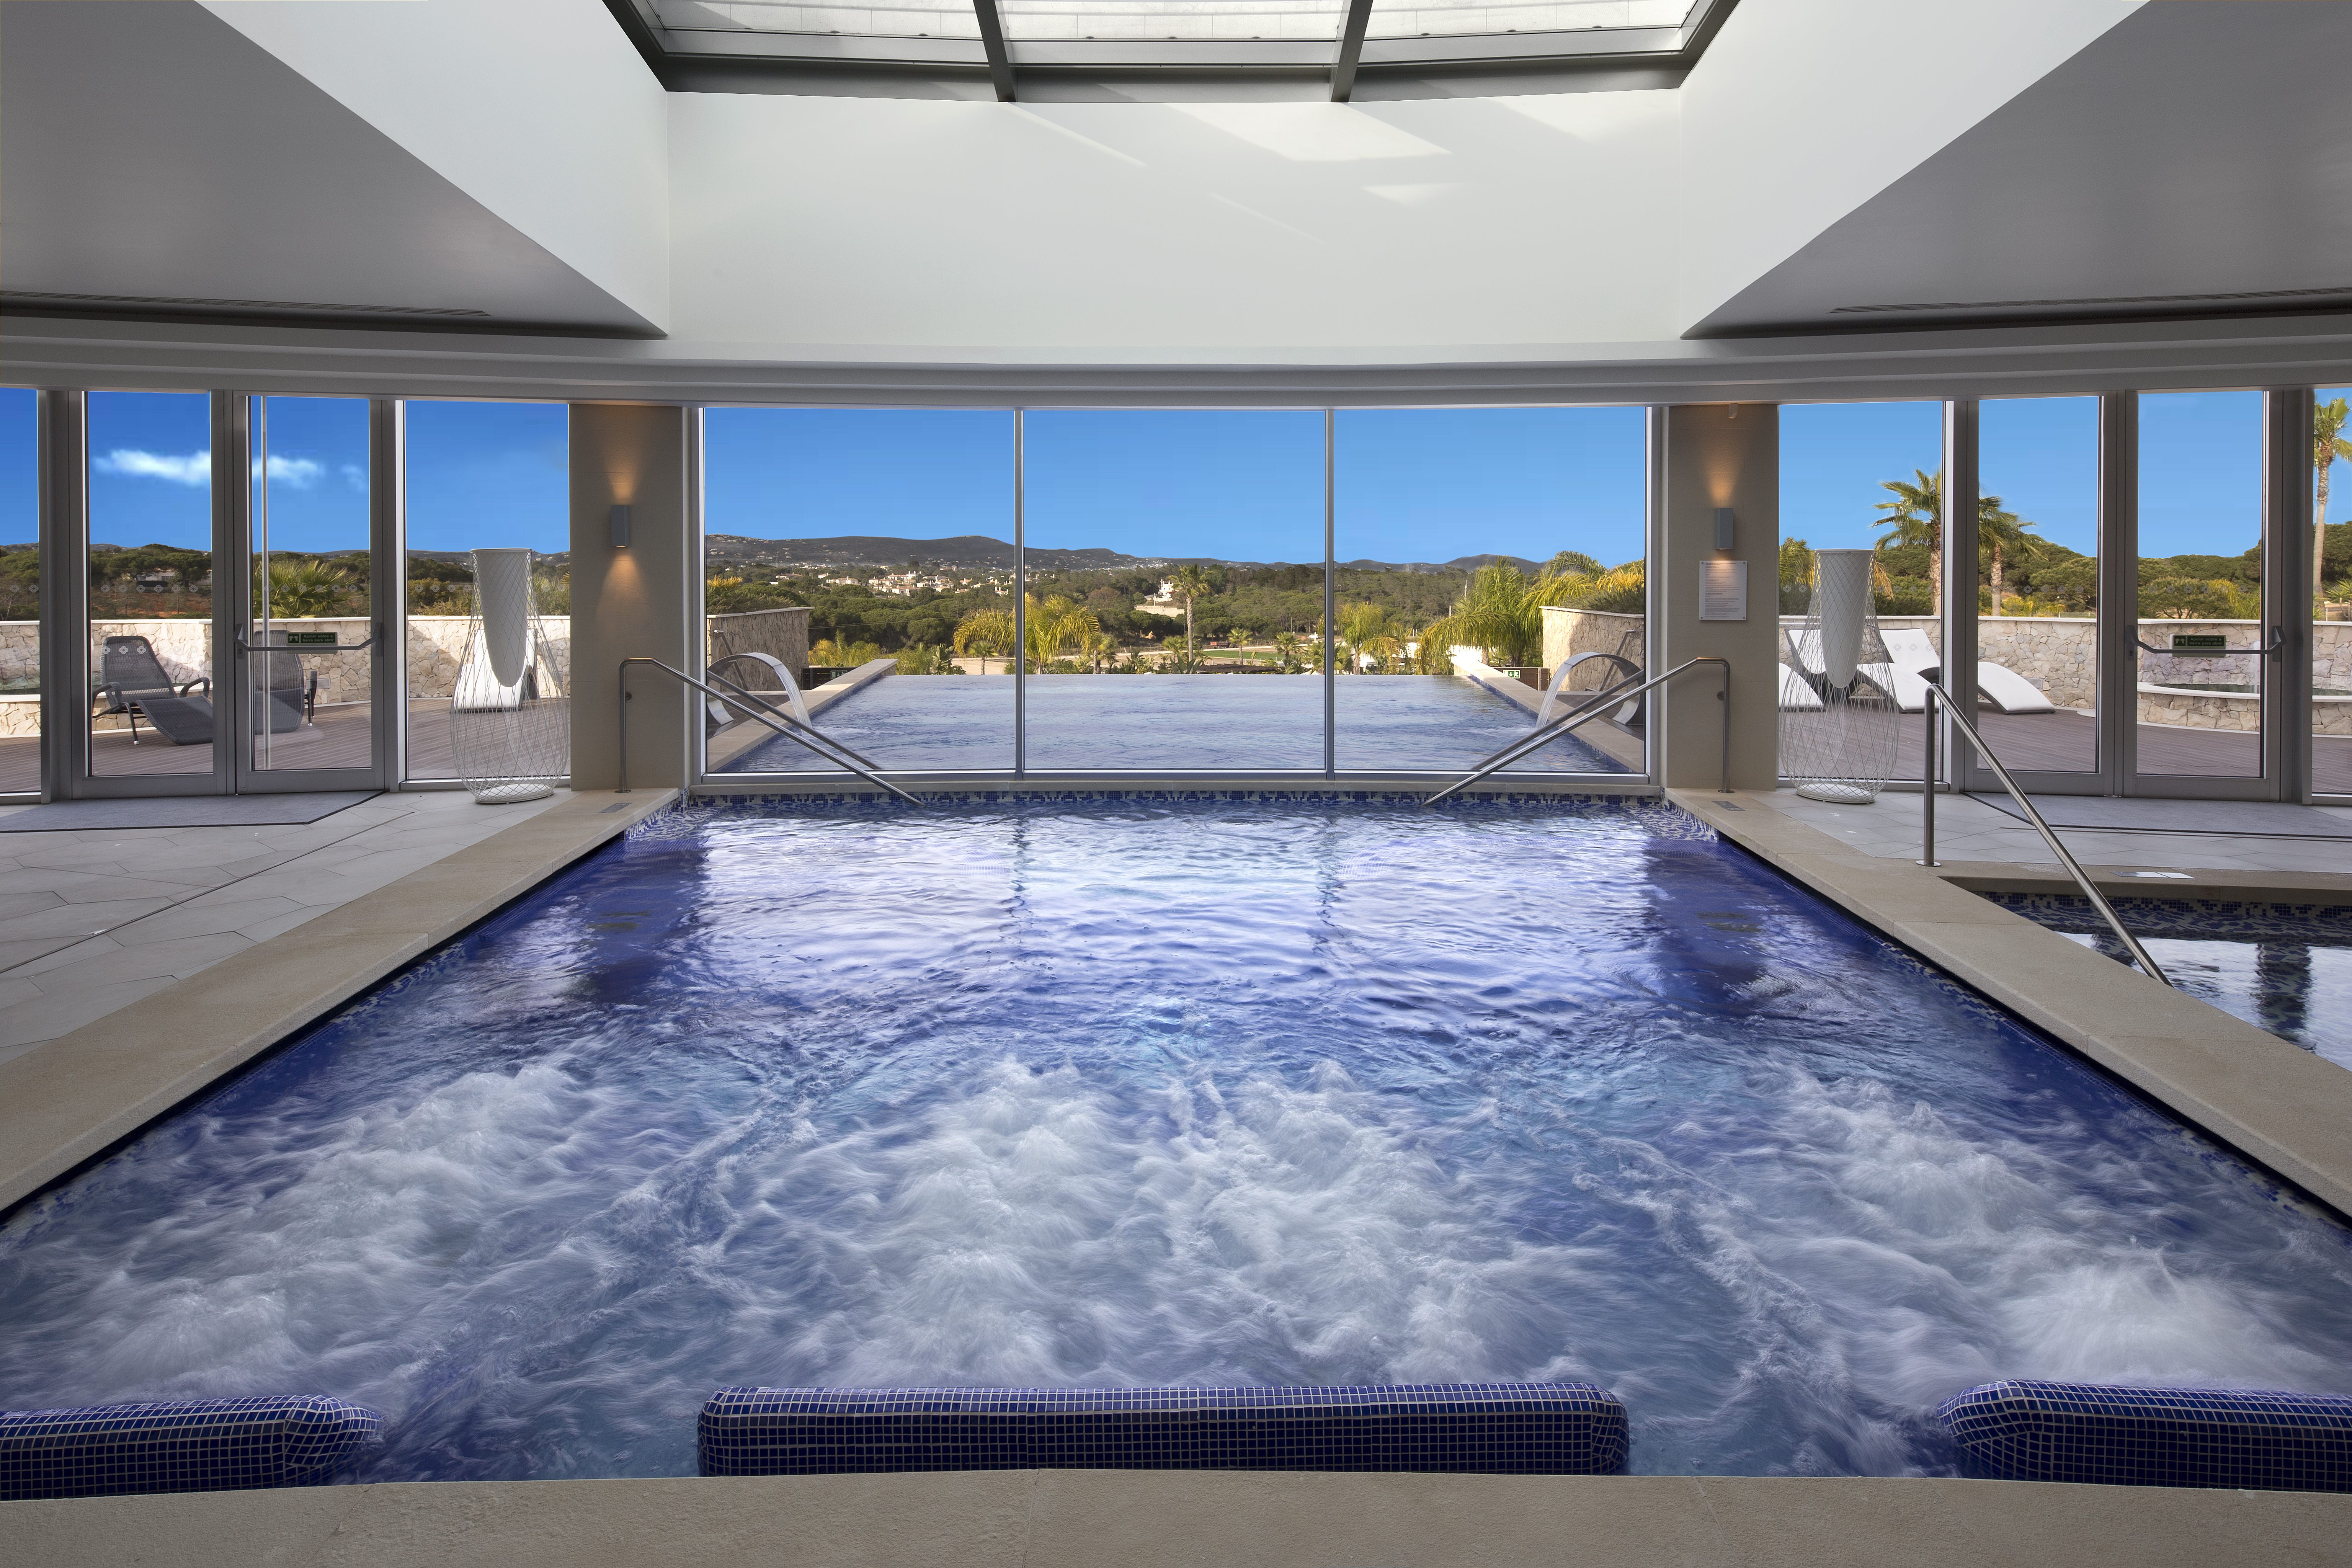 Conrad Algarve Spa - Thermal area swimming pool